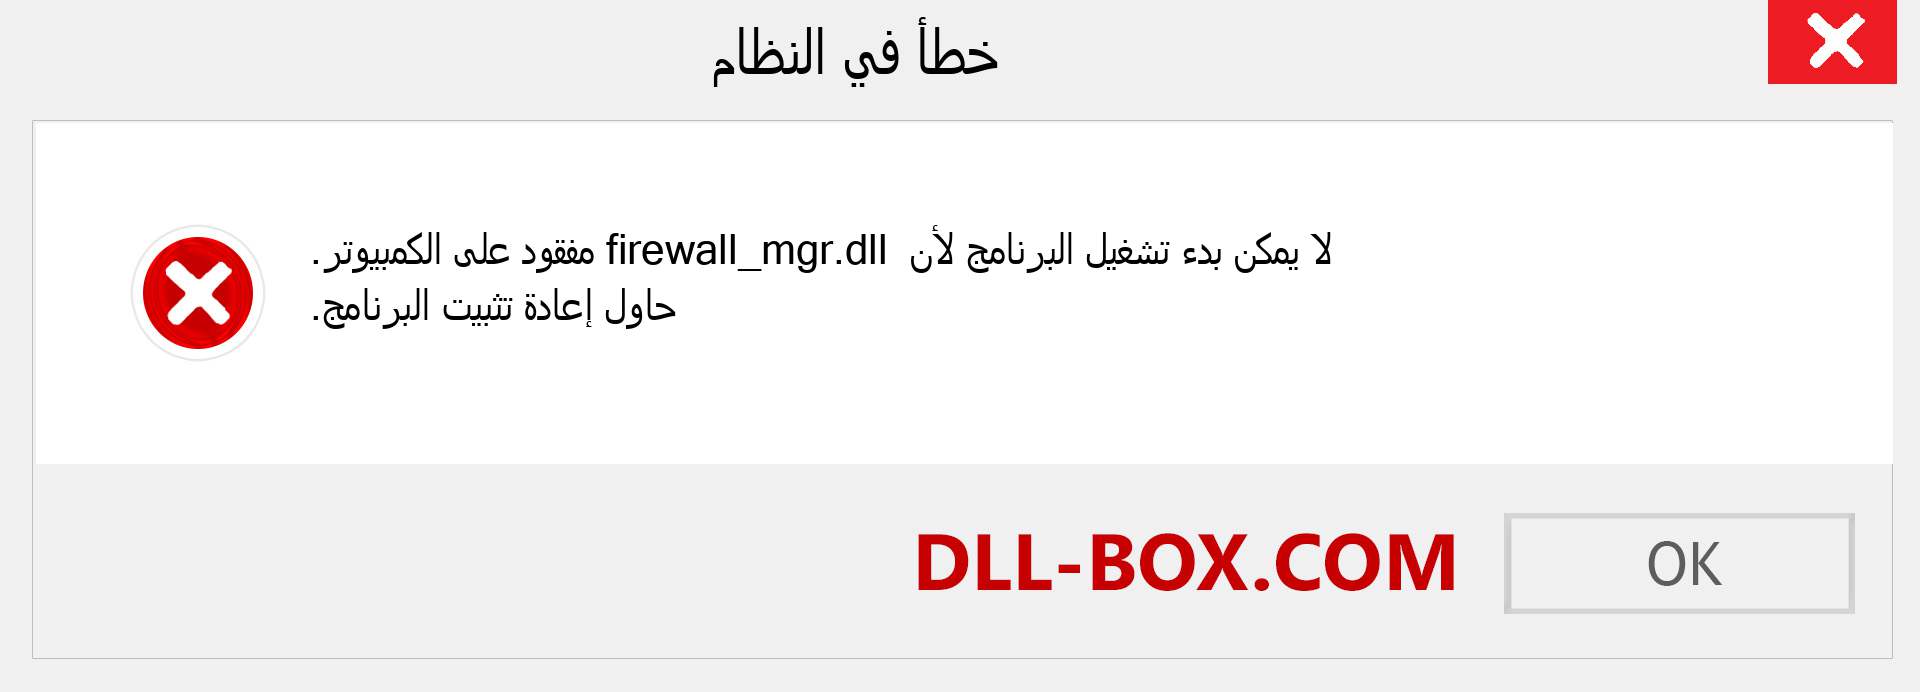 ملف firewall_mgr.dll مفقود ؟. التنزيل لنظام التشغيل Windows 7 و 8 و 10 - إصلاح خطأ firewall_mgr dll المفقود على Windows والصور والصور